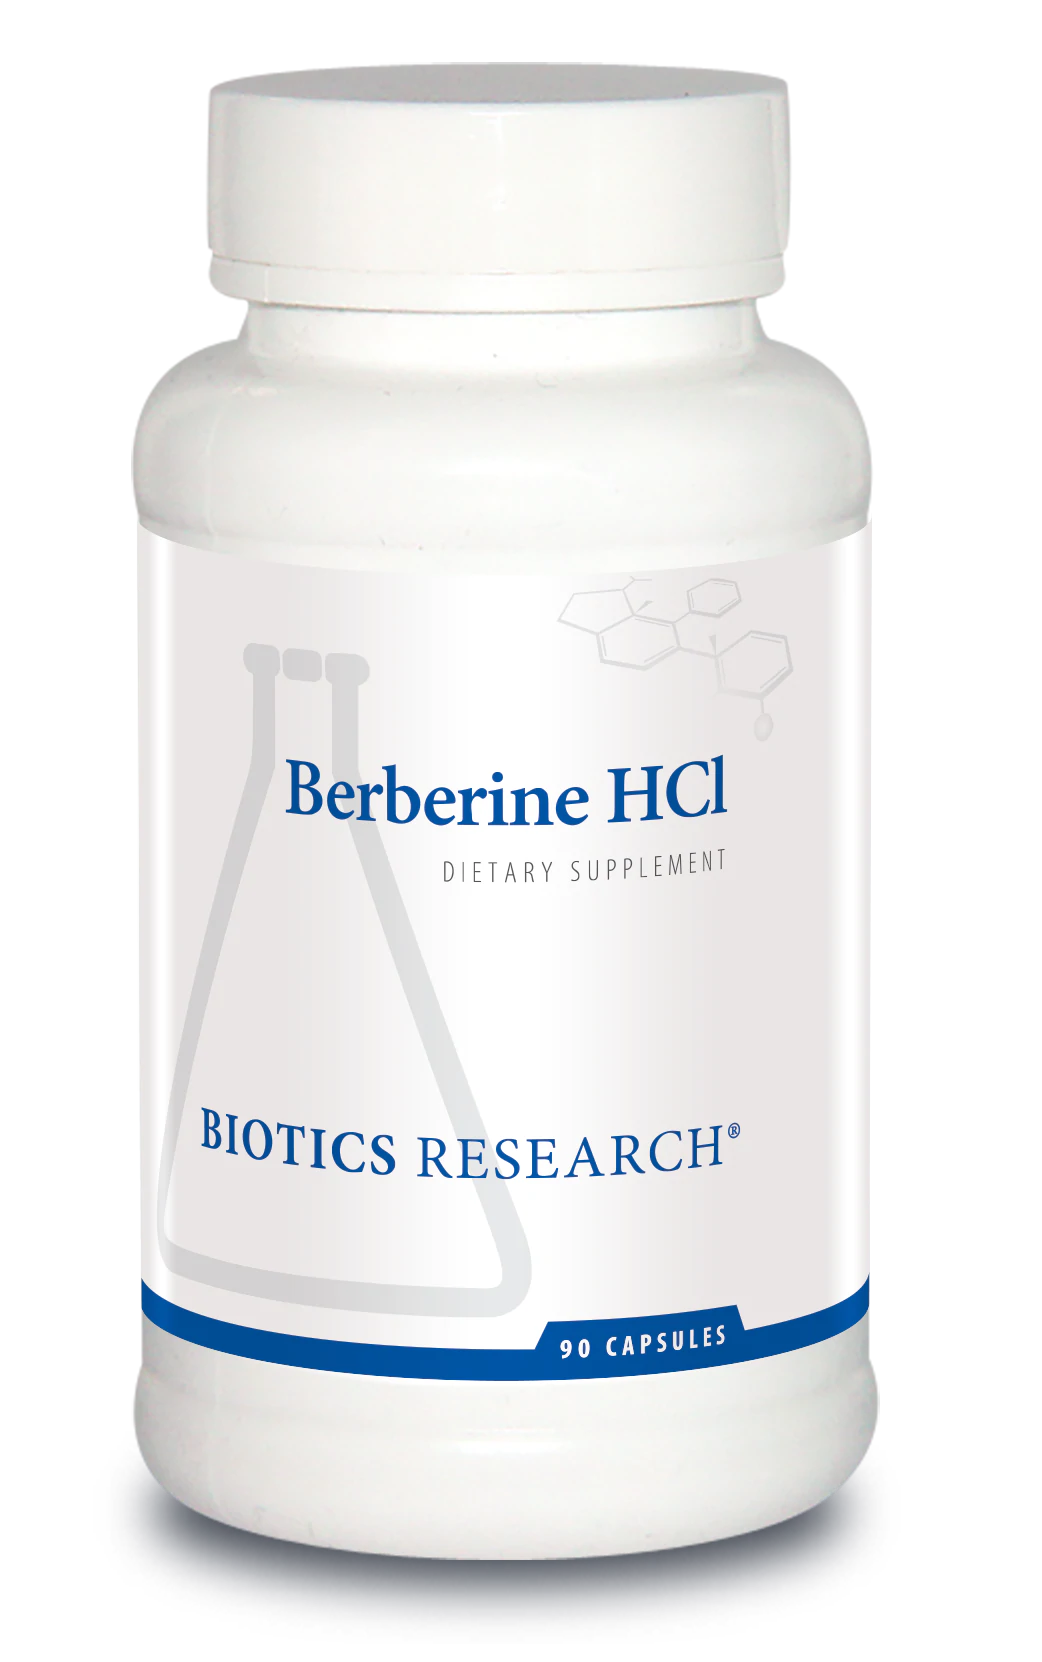 Berberine HCl